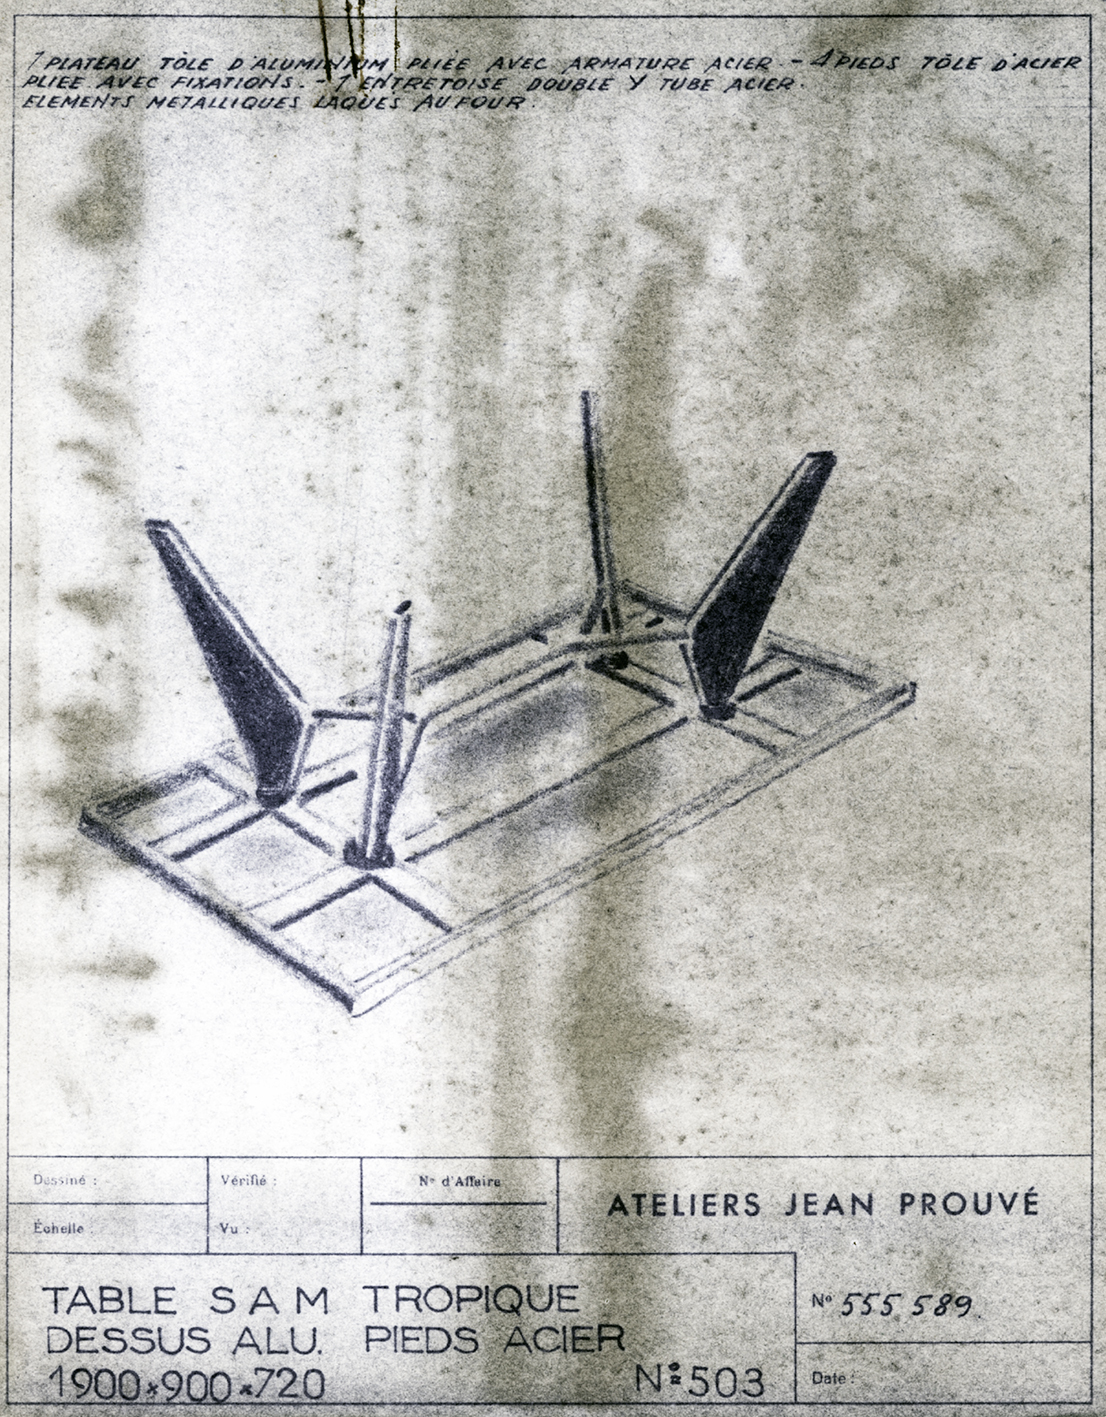 « Table S.A.M. Tropique n° 503 ». Fiche descriptive Ateliers Jean Prouvé n° 555.589, c. 1953.